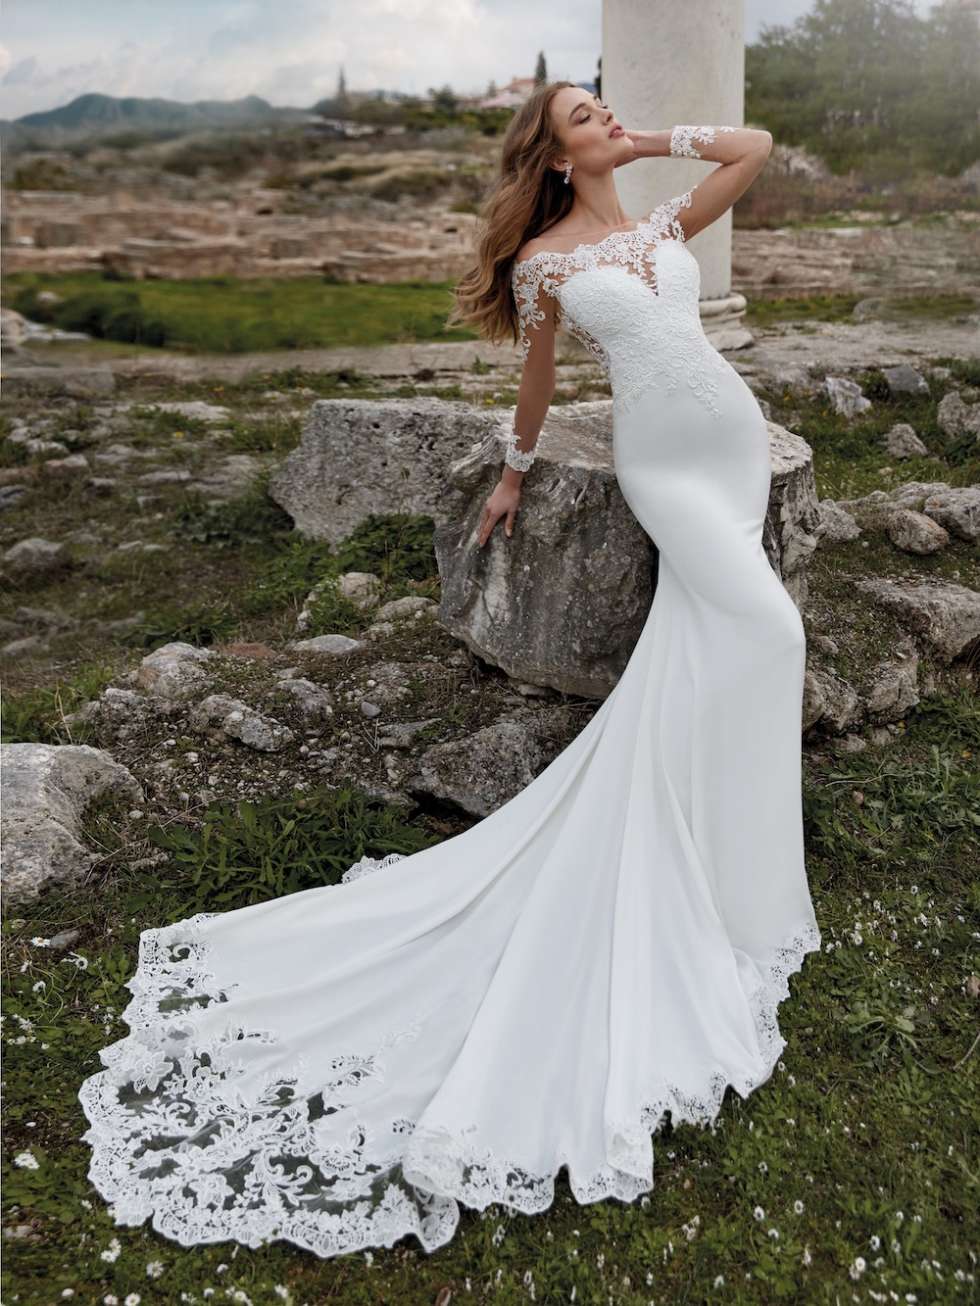 The Nicole Milano 2022 Wedding Dresses